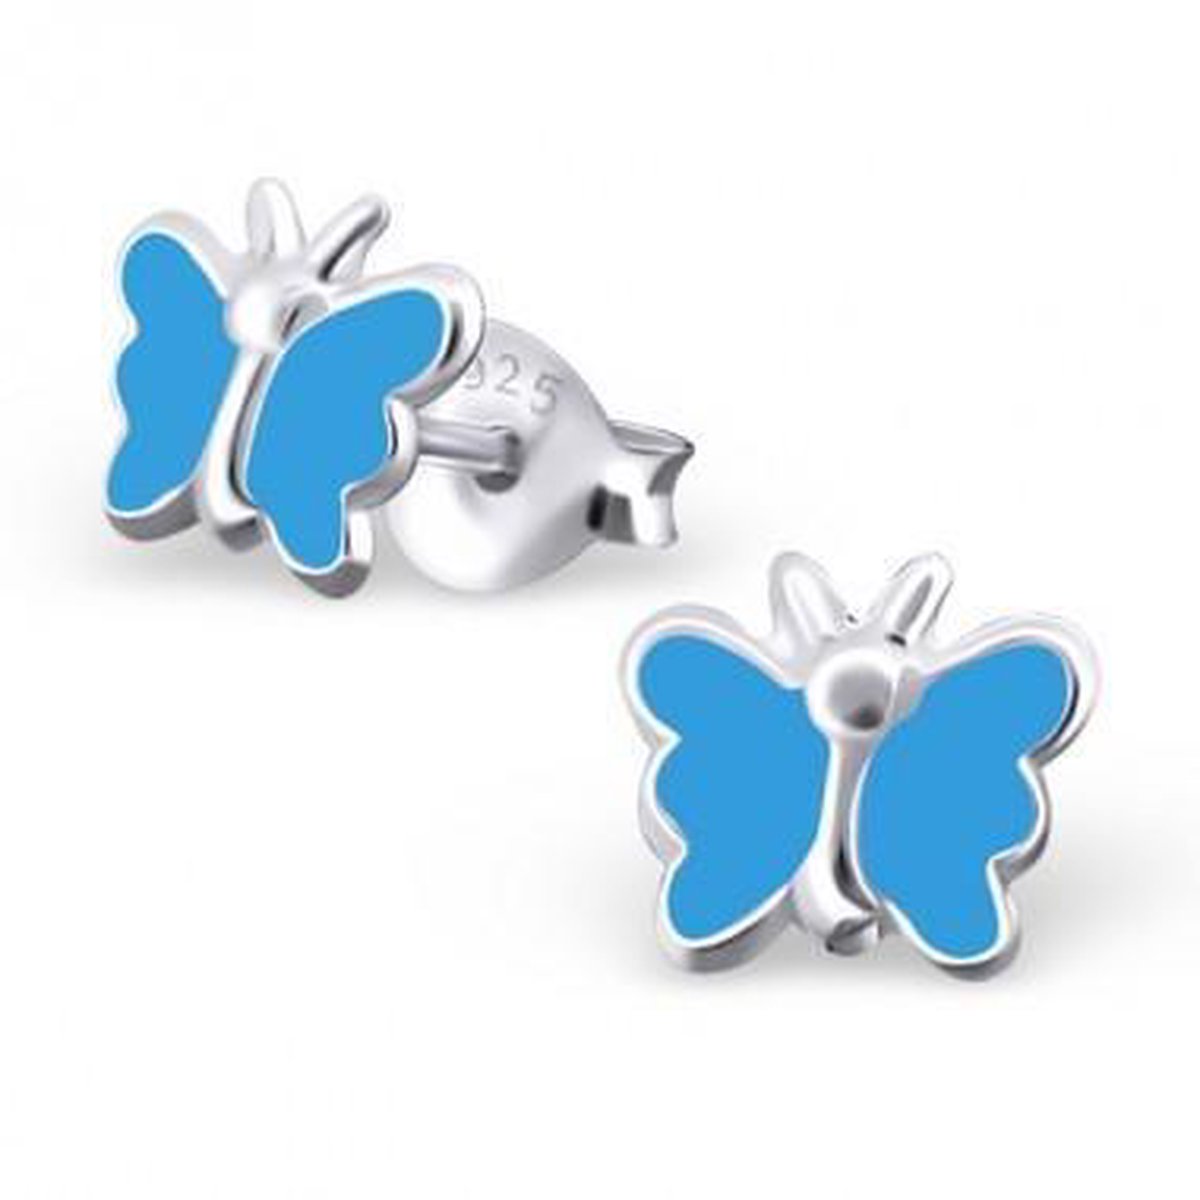 Little Bijoux oorknopje-vlinder blauw